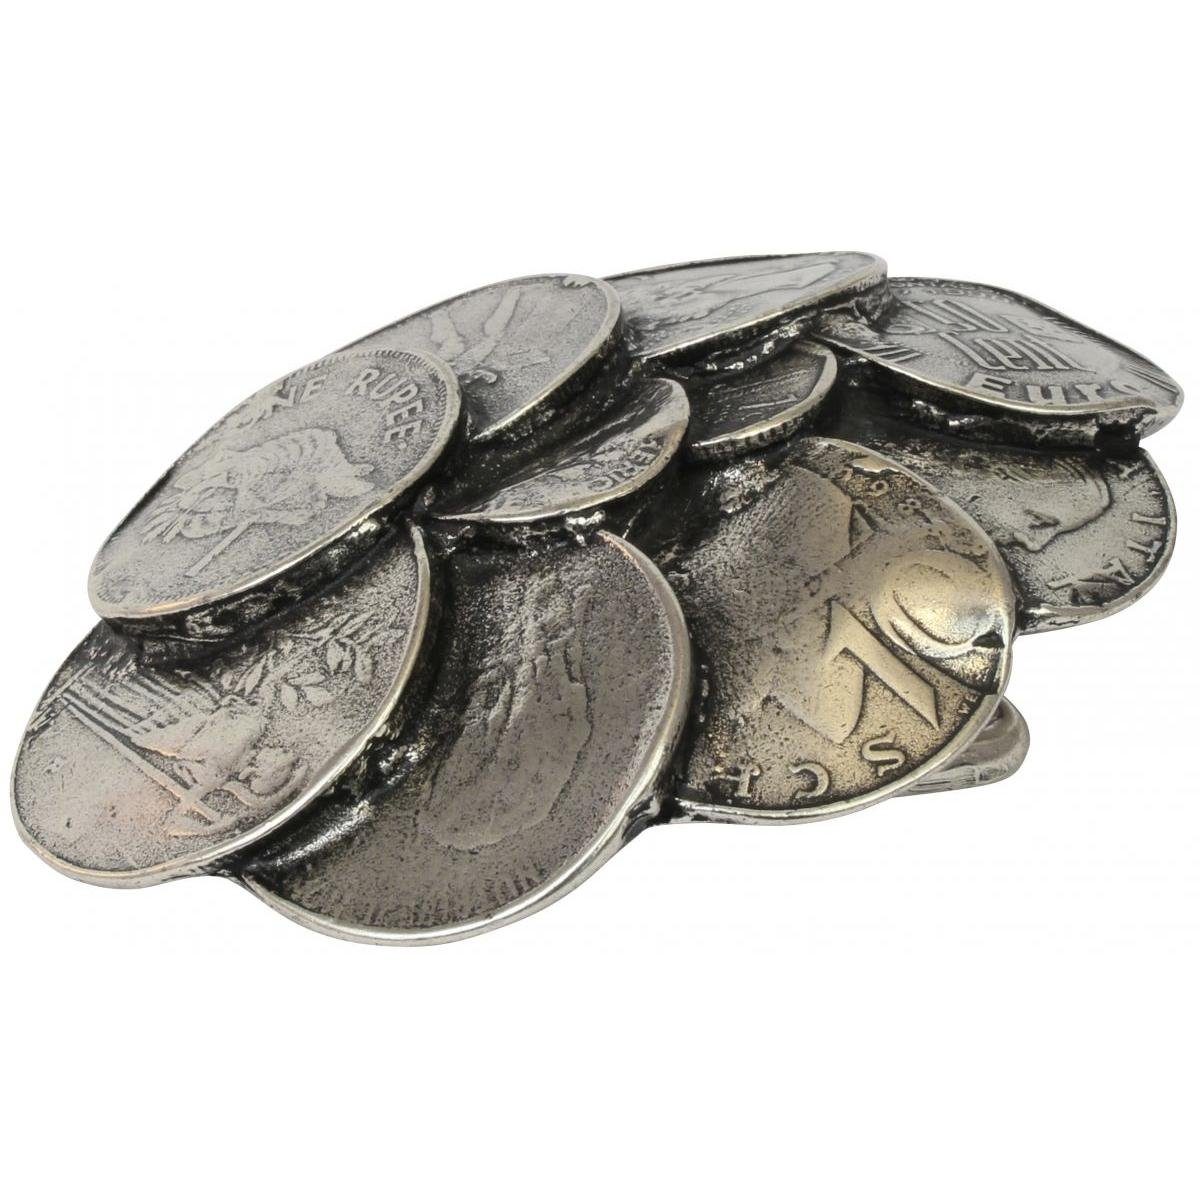 Altsilber BELTINGER Wechselschließe Gürtelschnalle cm - Coins - 40mm Buckle 4,0 bis Gürtelschließe Gürtel